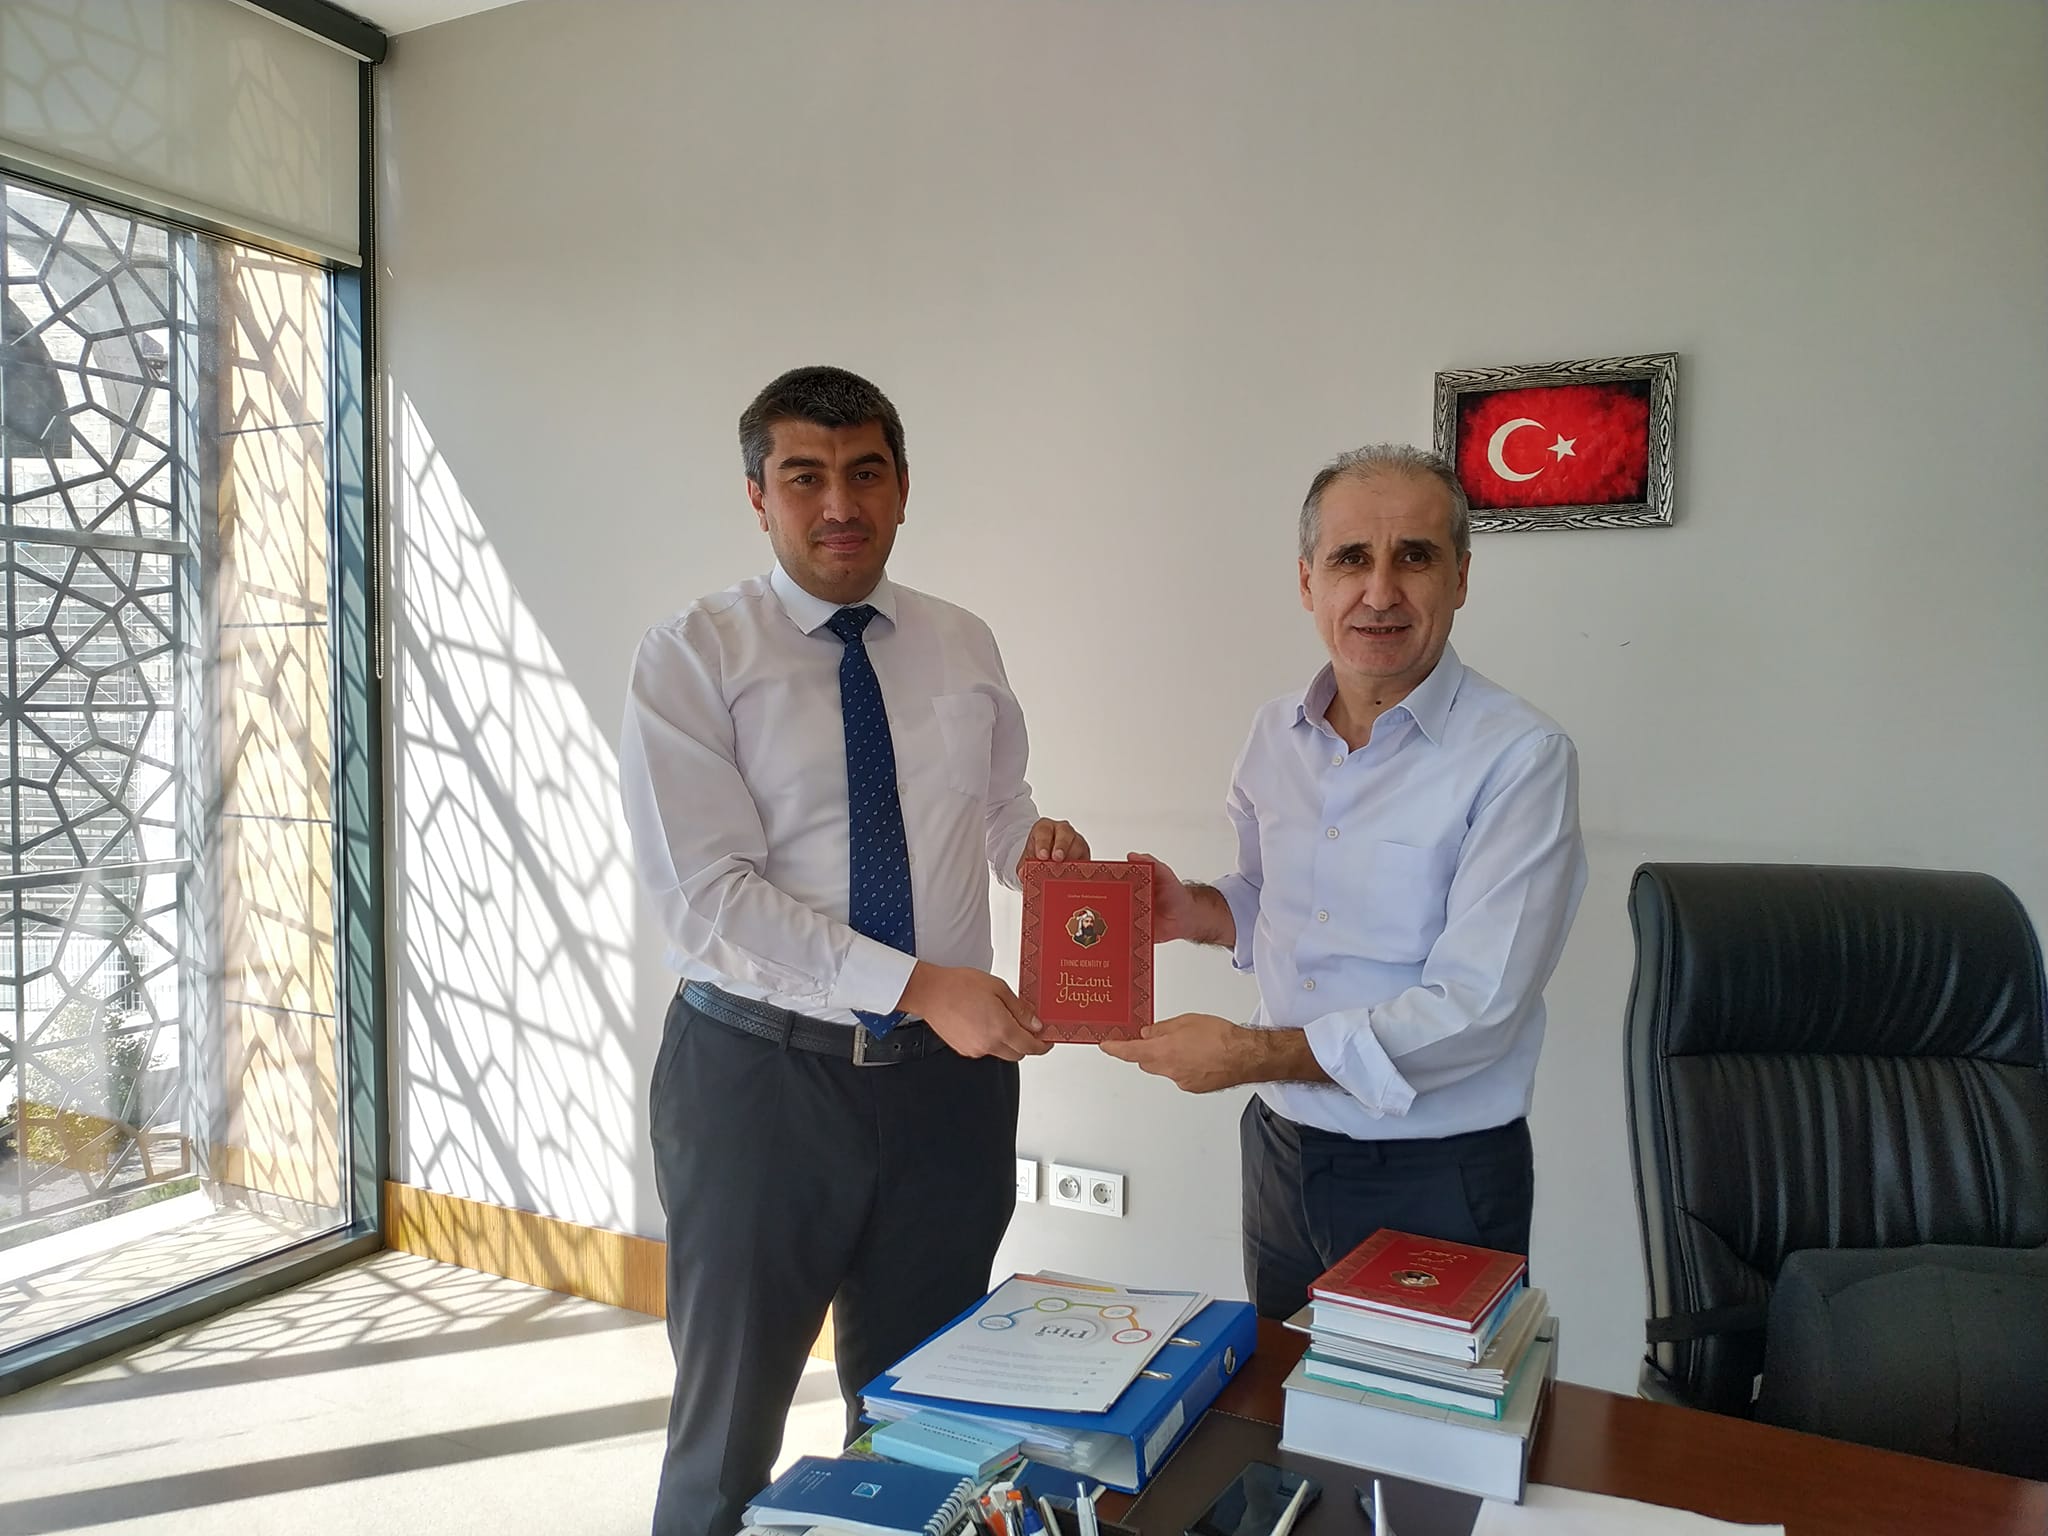 Şərqşünas alim İstanbul 29 Mayıs Universitetinin kitabxanasının baş direktoru Mehmet Yılmazla görüşüb